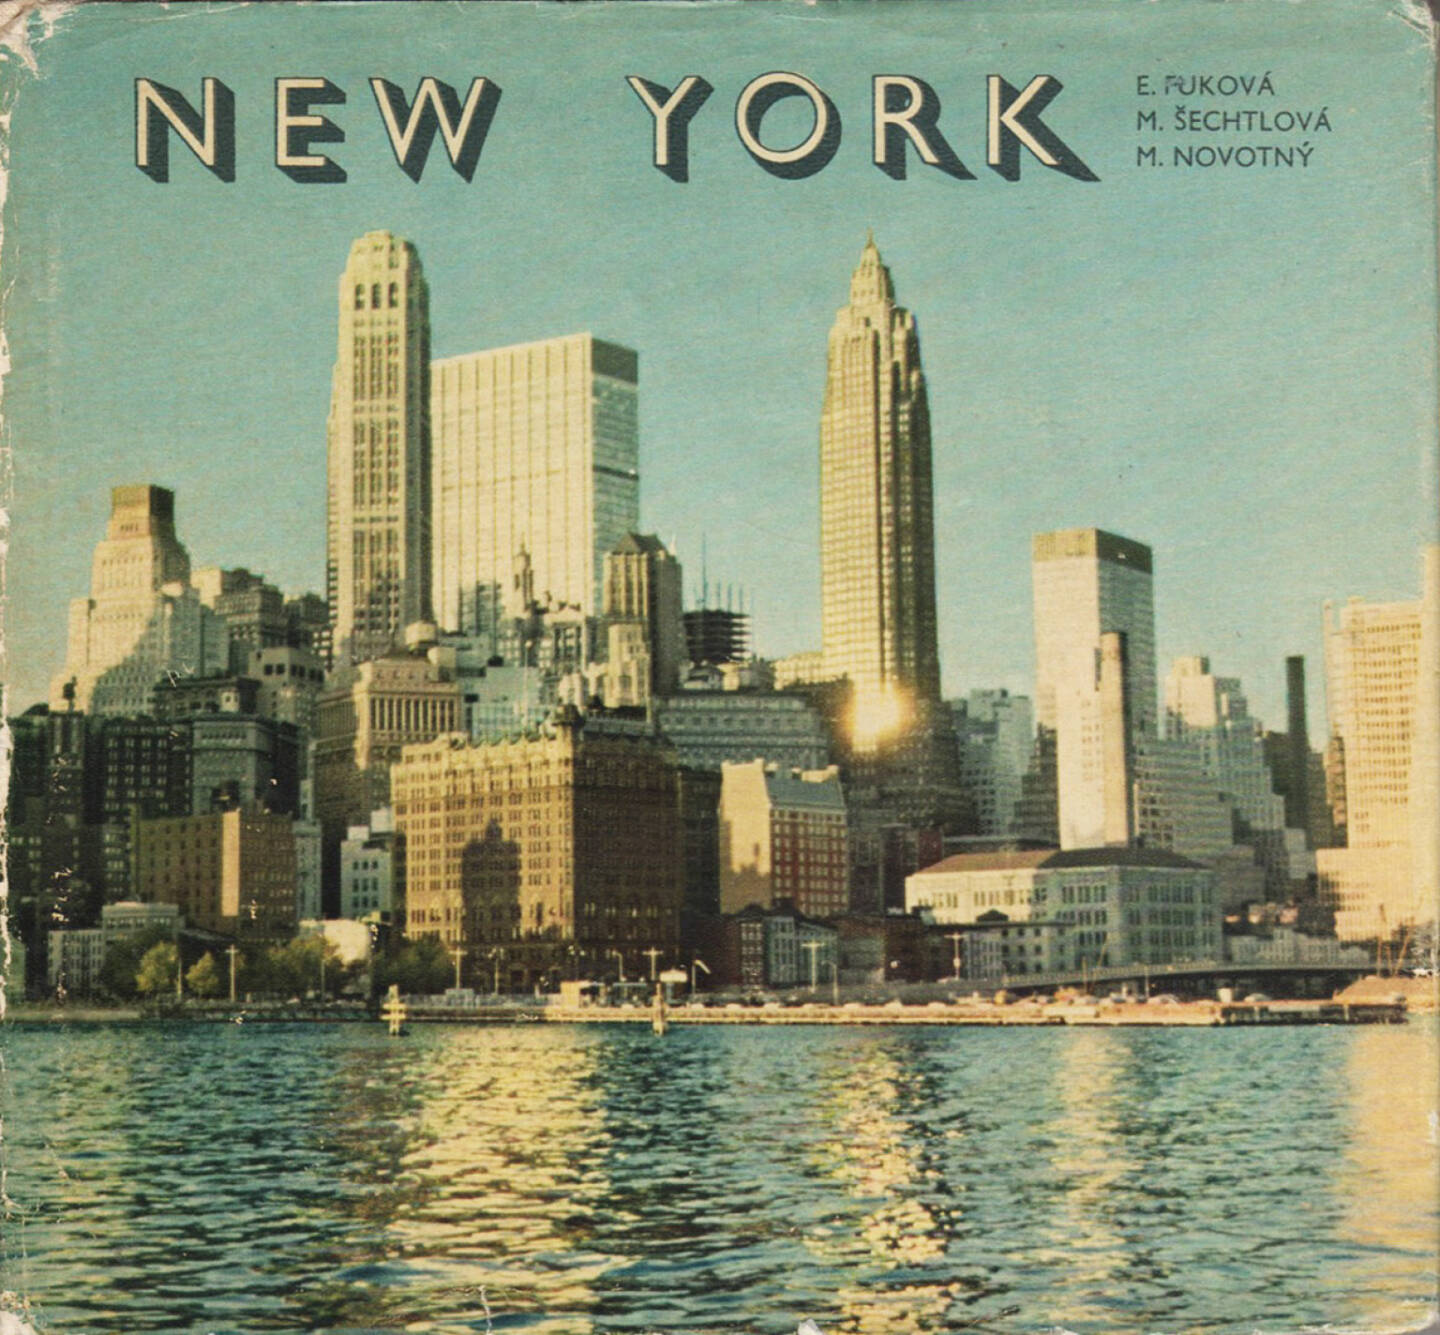 Eva Fuková, Marie Šechtlová, Miloň Novotný - New York, Mladá fronta 1966, Cover - http://josefchladek.com/book/eva_fukova_marie_sechtlova_milon_novotny_-_new_york